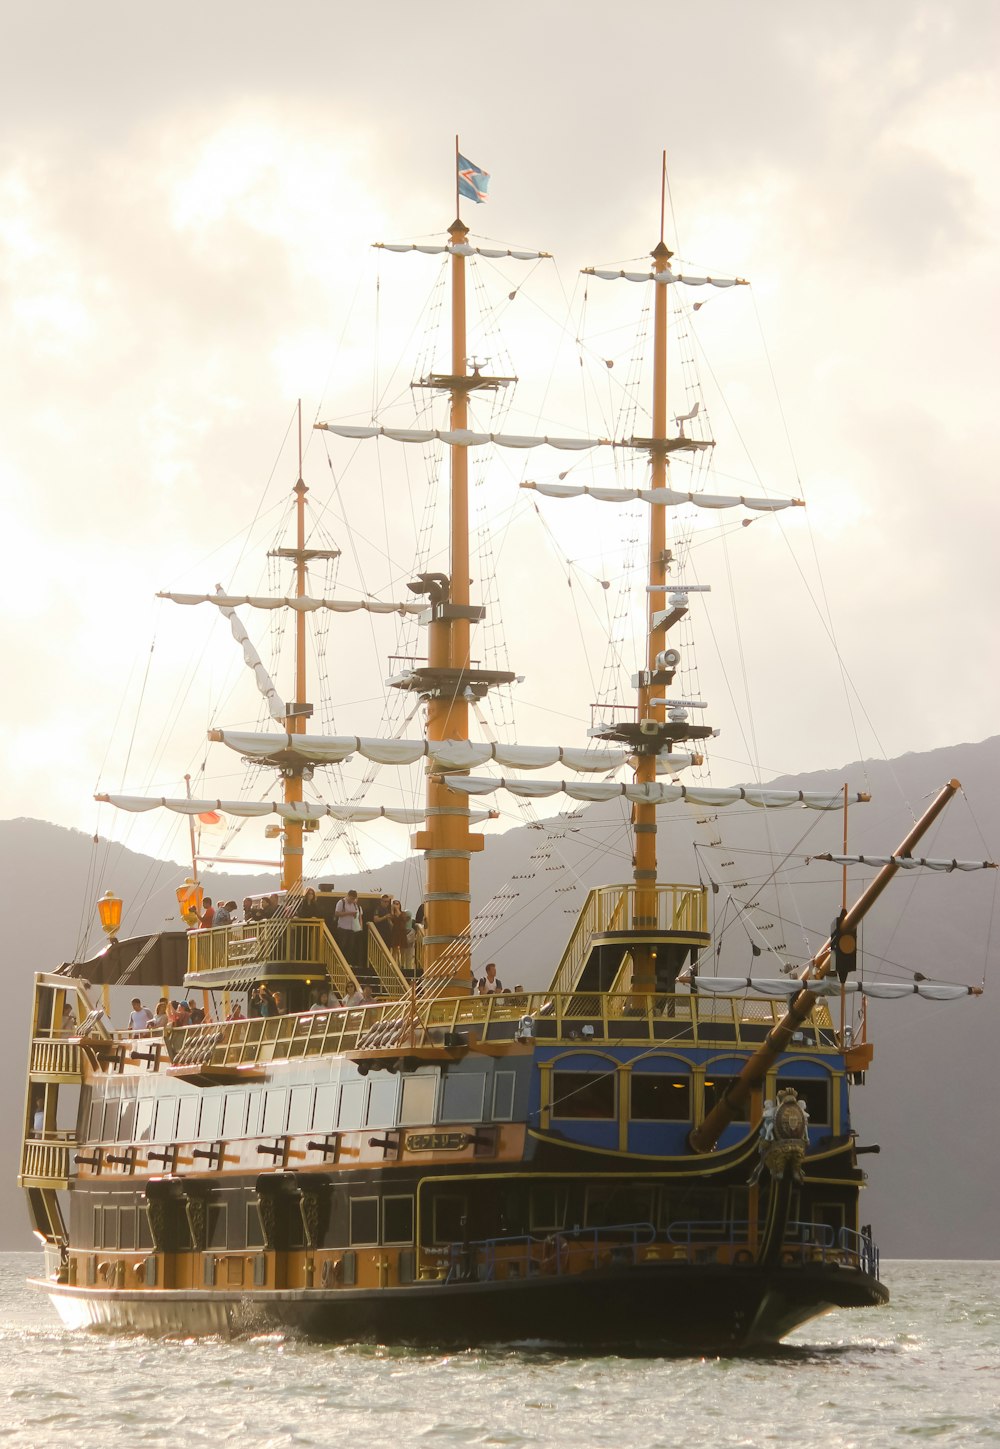 navio branco e marrom no mar durante o dia